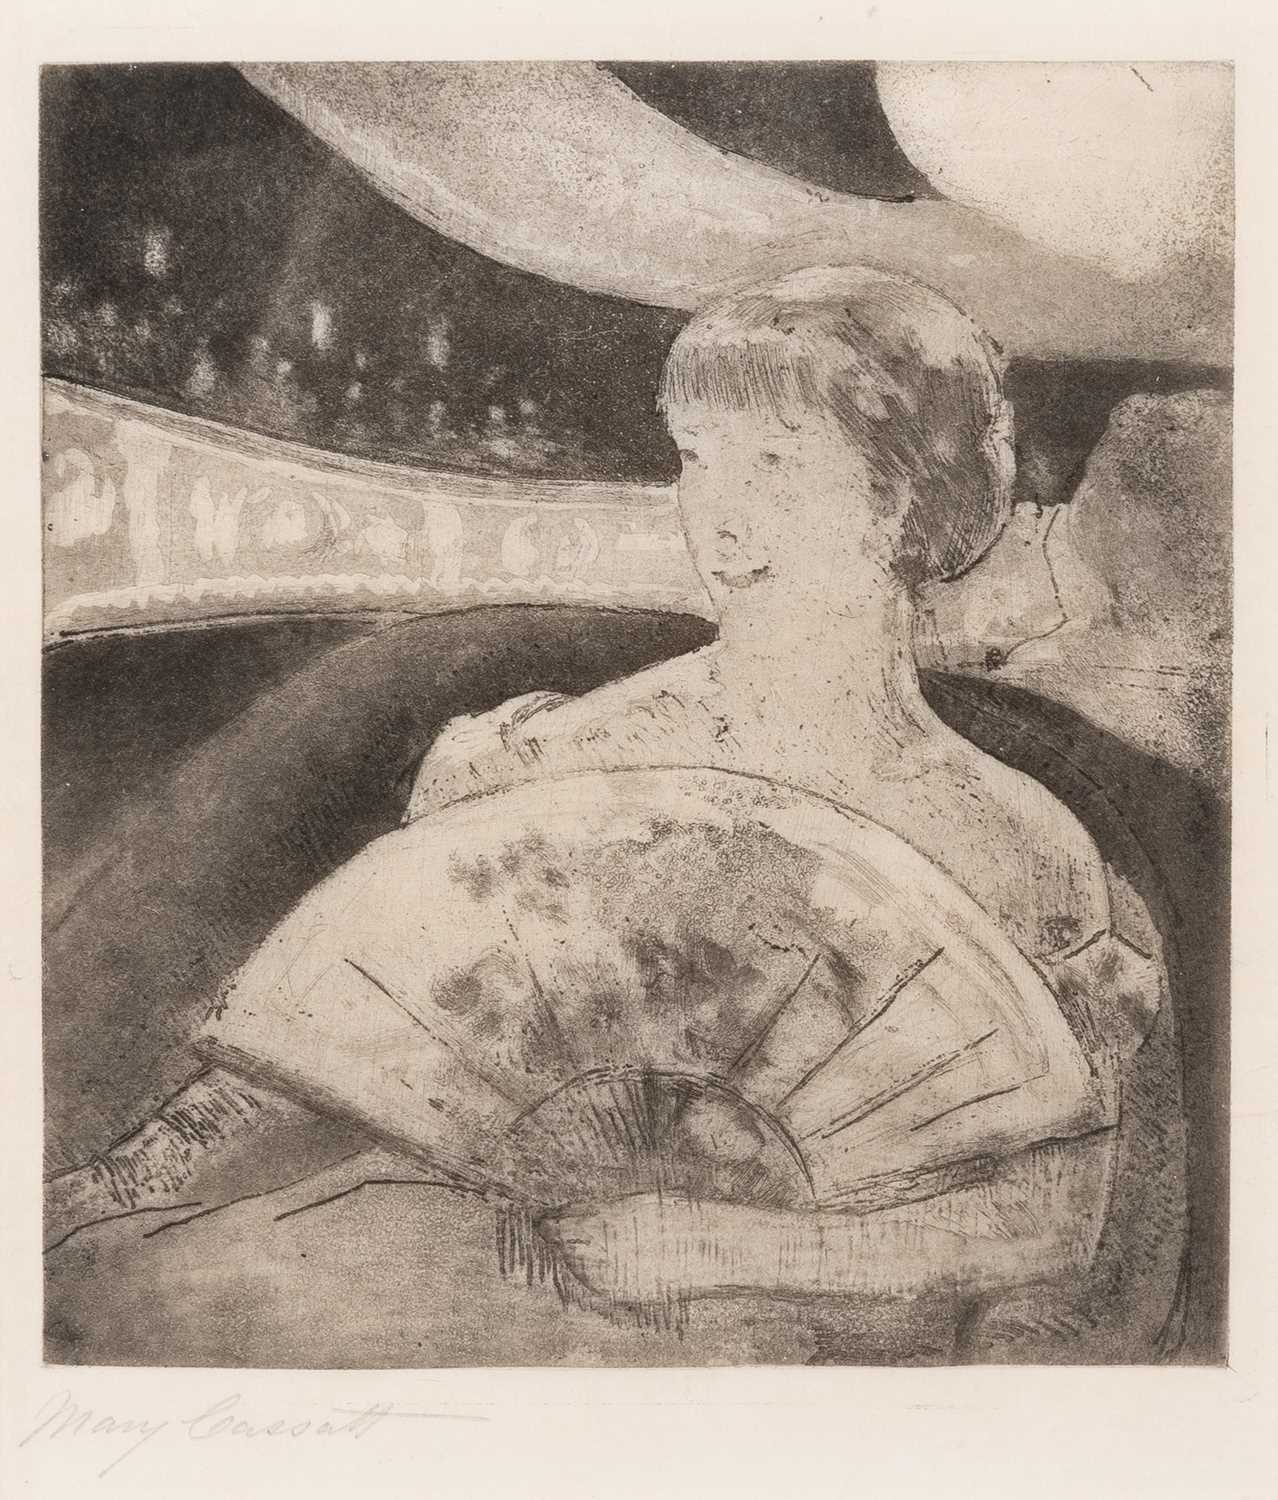 Lot 22 - Mary Cassatt (1844-1926)